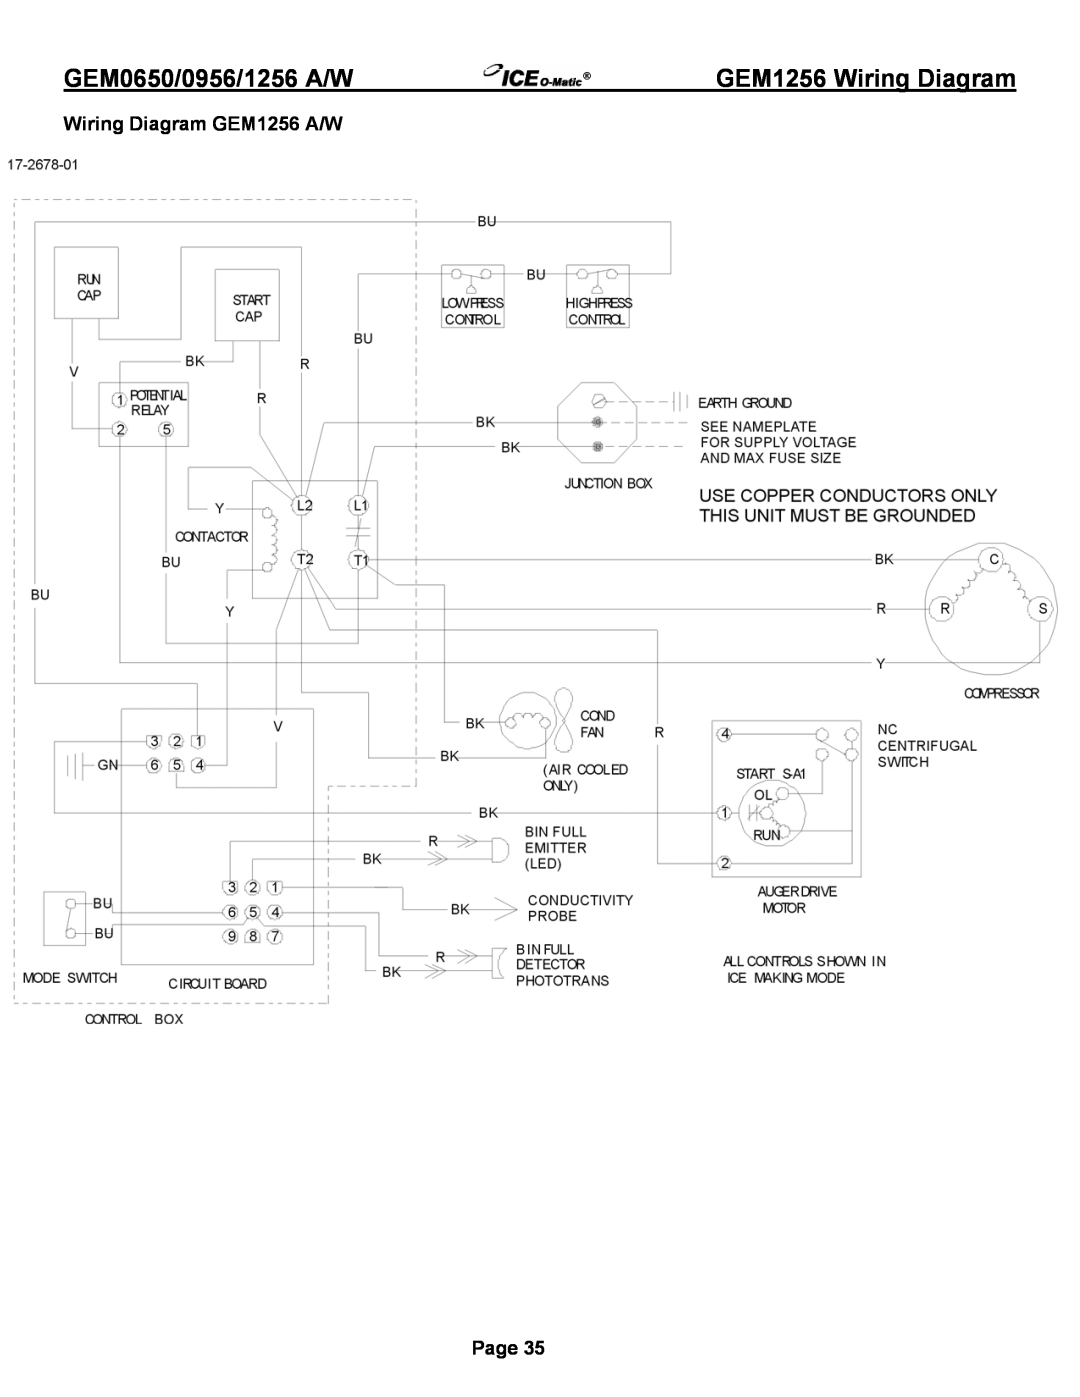 Ice-O-Matic GEM0956A/W, GEM1256A/W GEM1256 Wiring Diagram, Wiring Diagram GEM1256 A/W, GEM0650/0956/1256 A/W, Page 